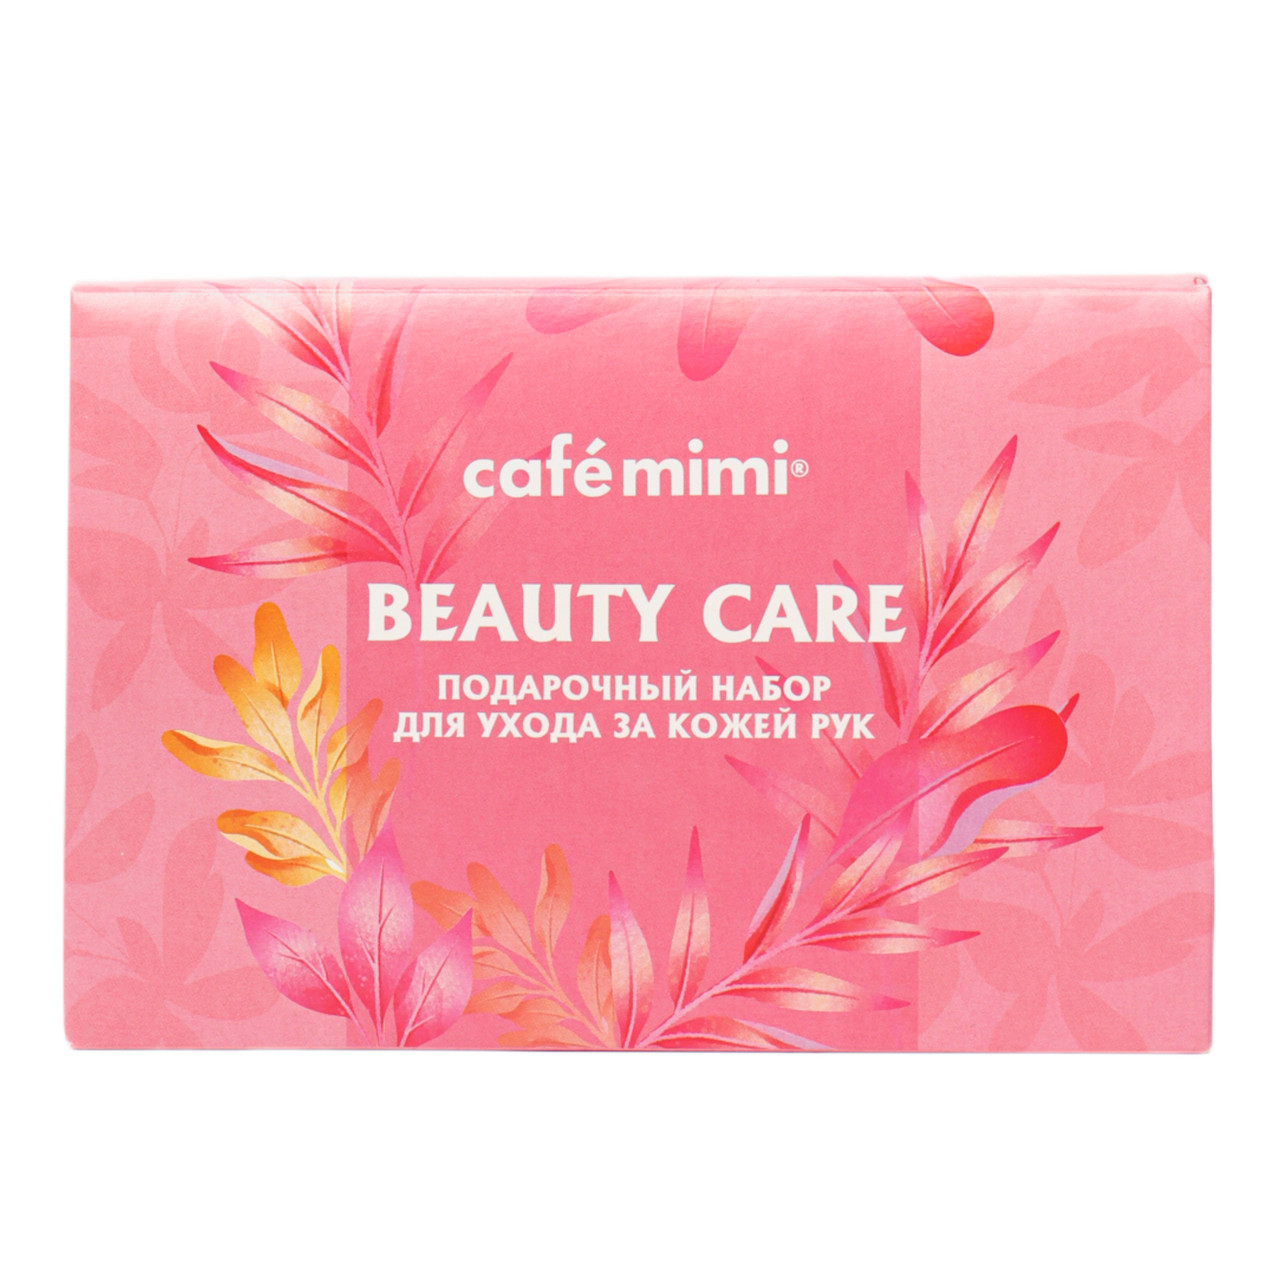 Подарочный набор Cafe Mimi Beauty Care для ухода за кожей рук